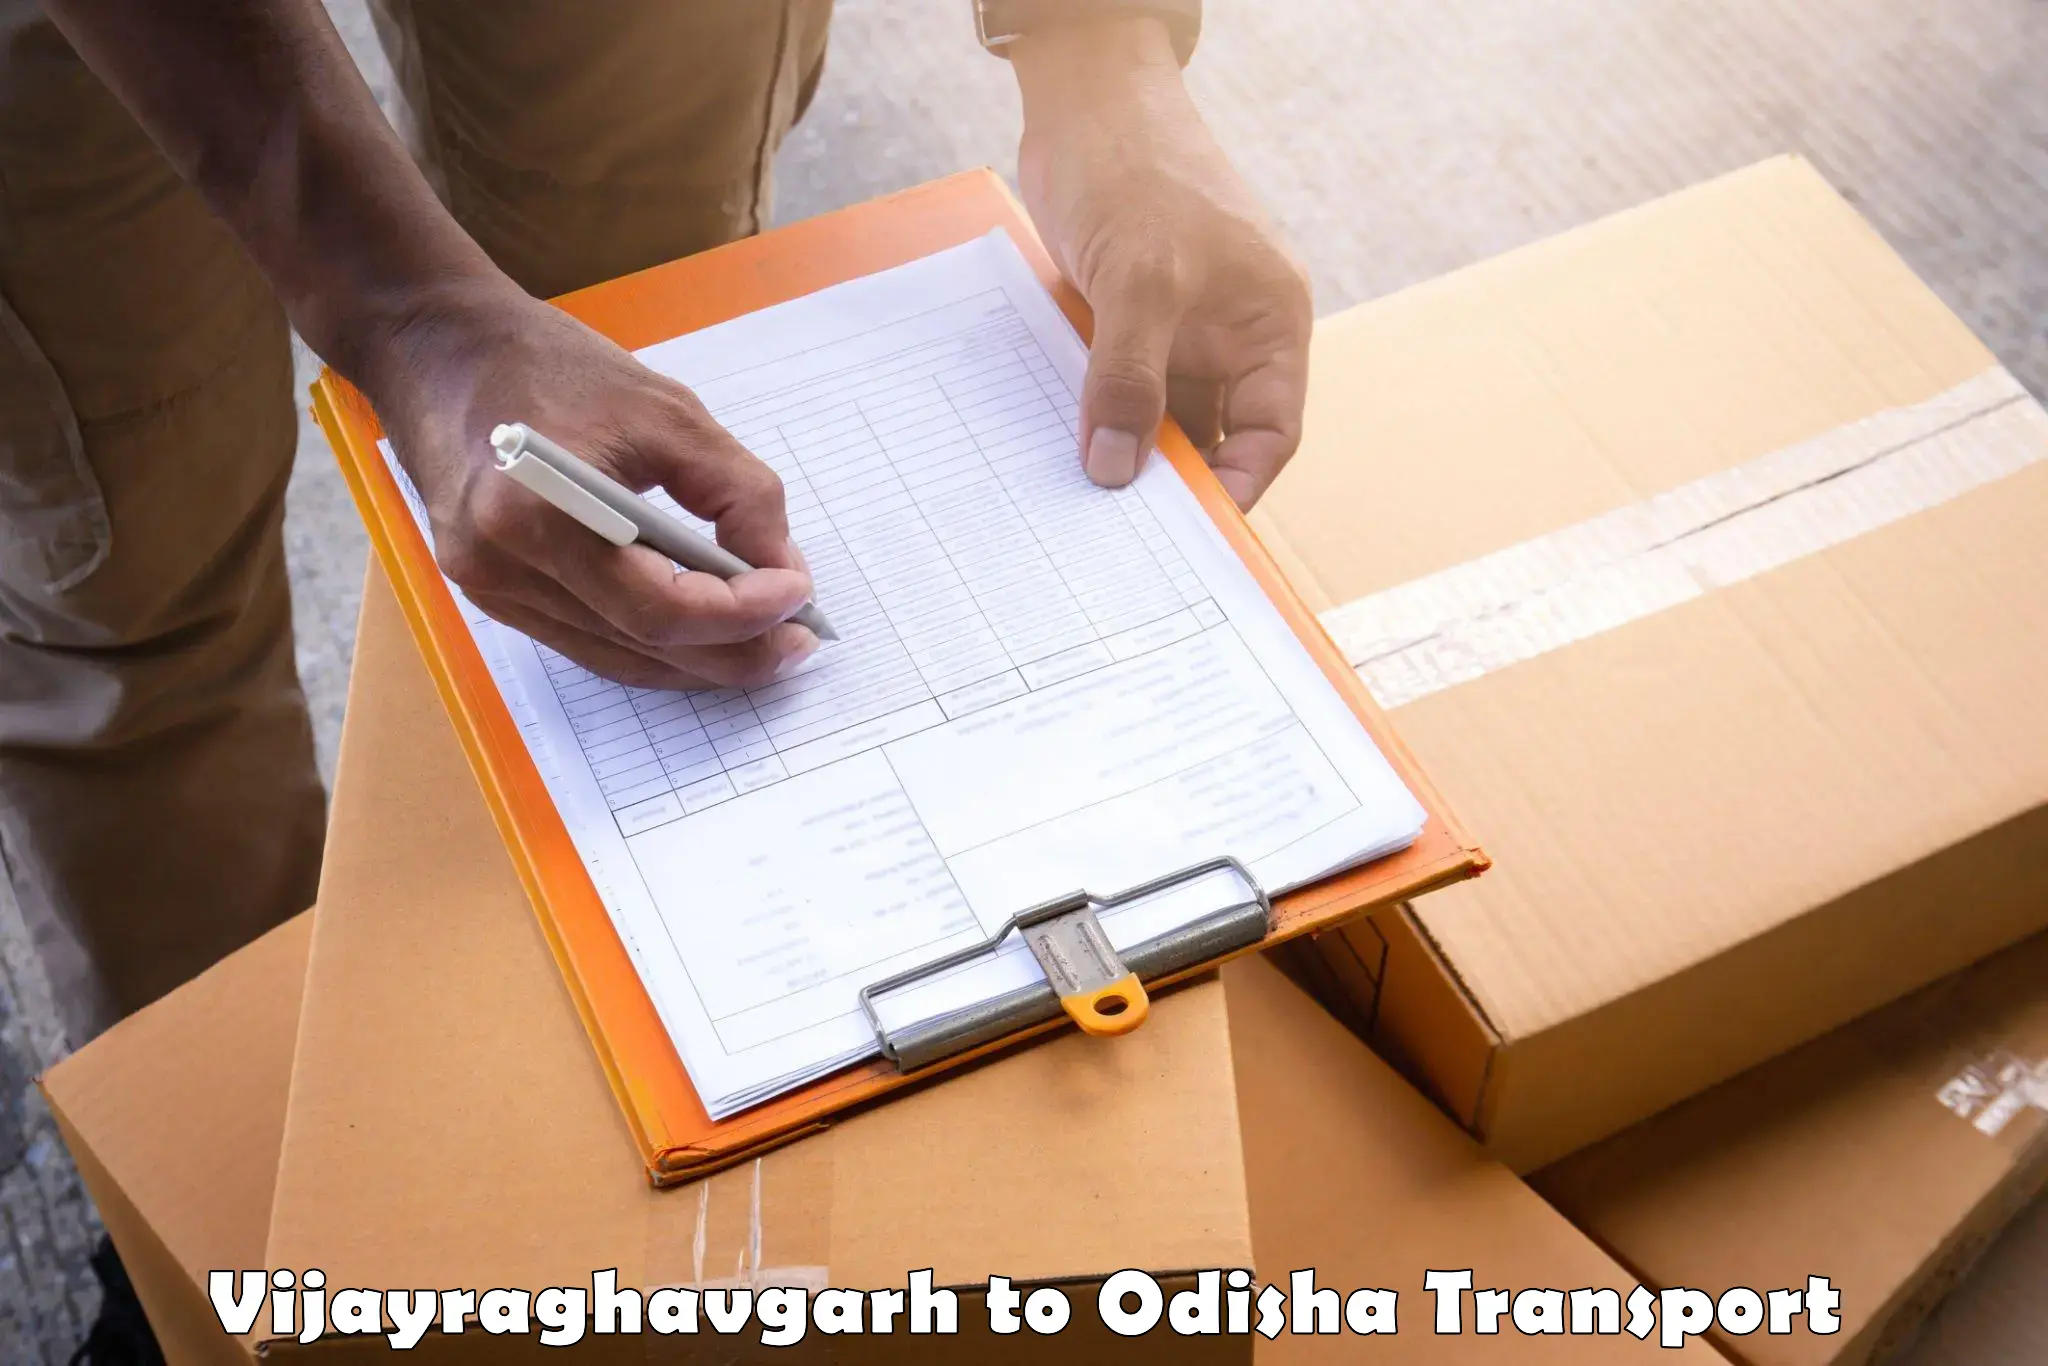 Two wheeler parcel service Vijayraghavgarh to Badagada